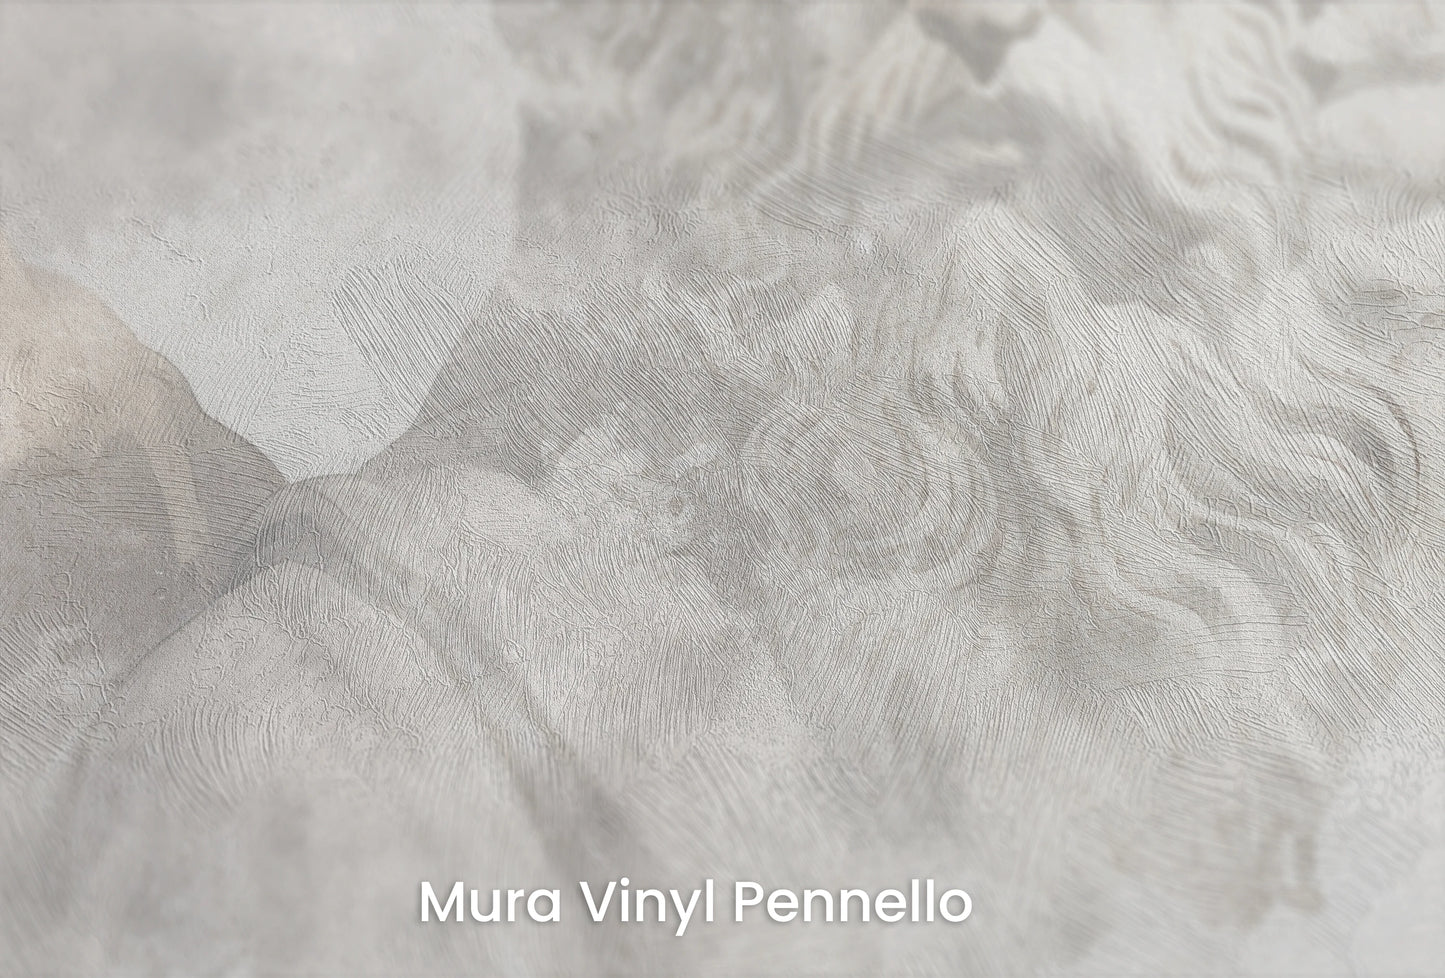 Zbliżenie na artystyczną fototapetę o nazwie Zeus's Introspection na podłożu Mura Vinyl Pennello - faktura pociągnięć pędzla malarskiego.